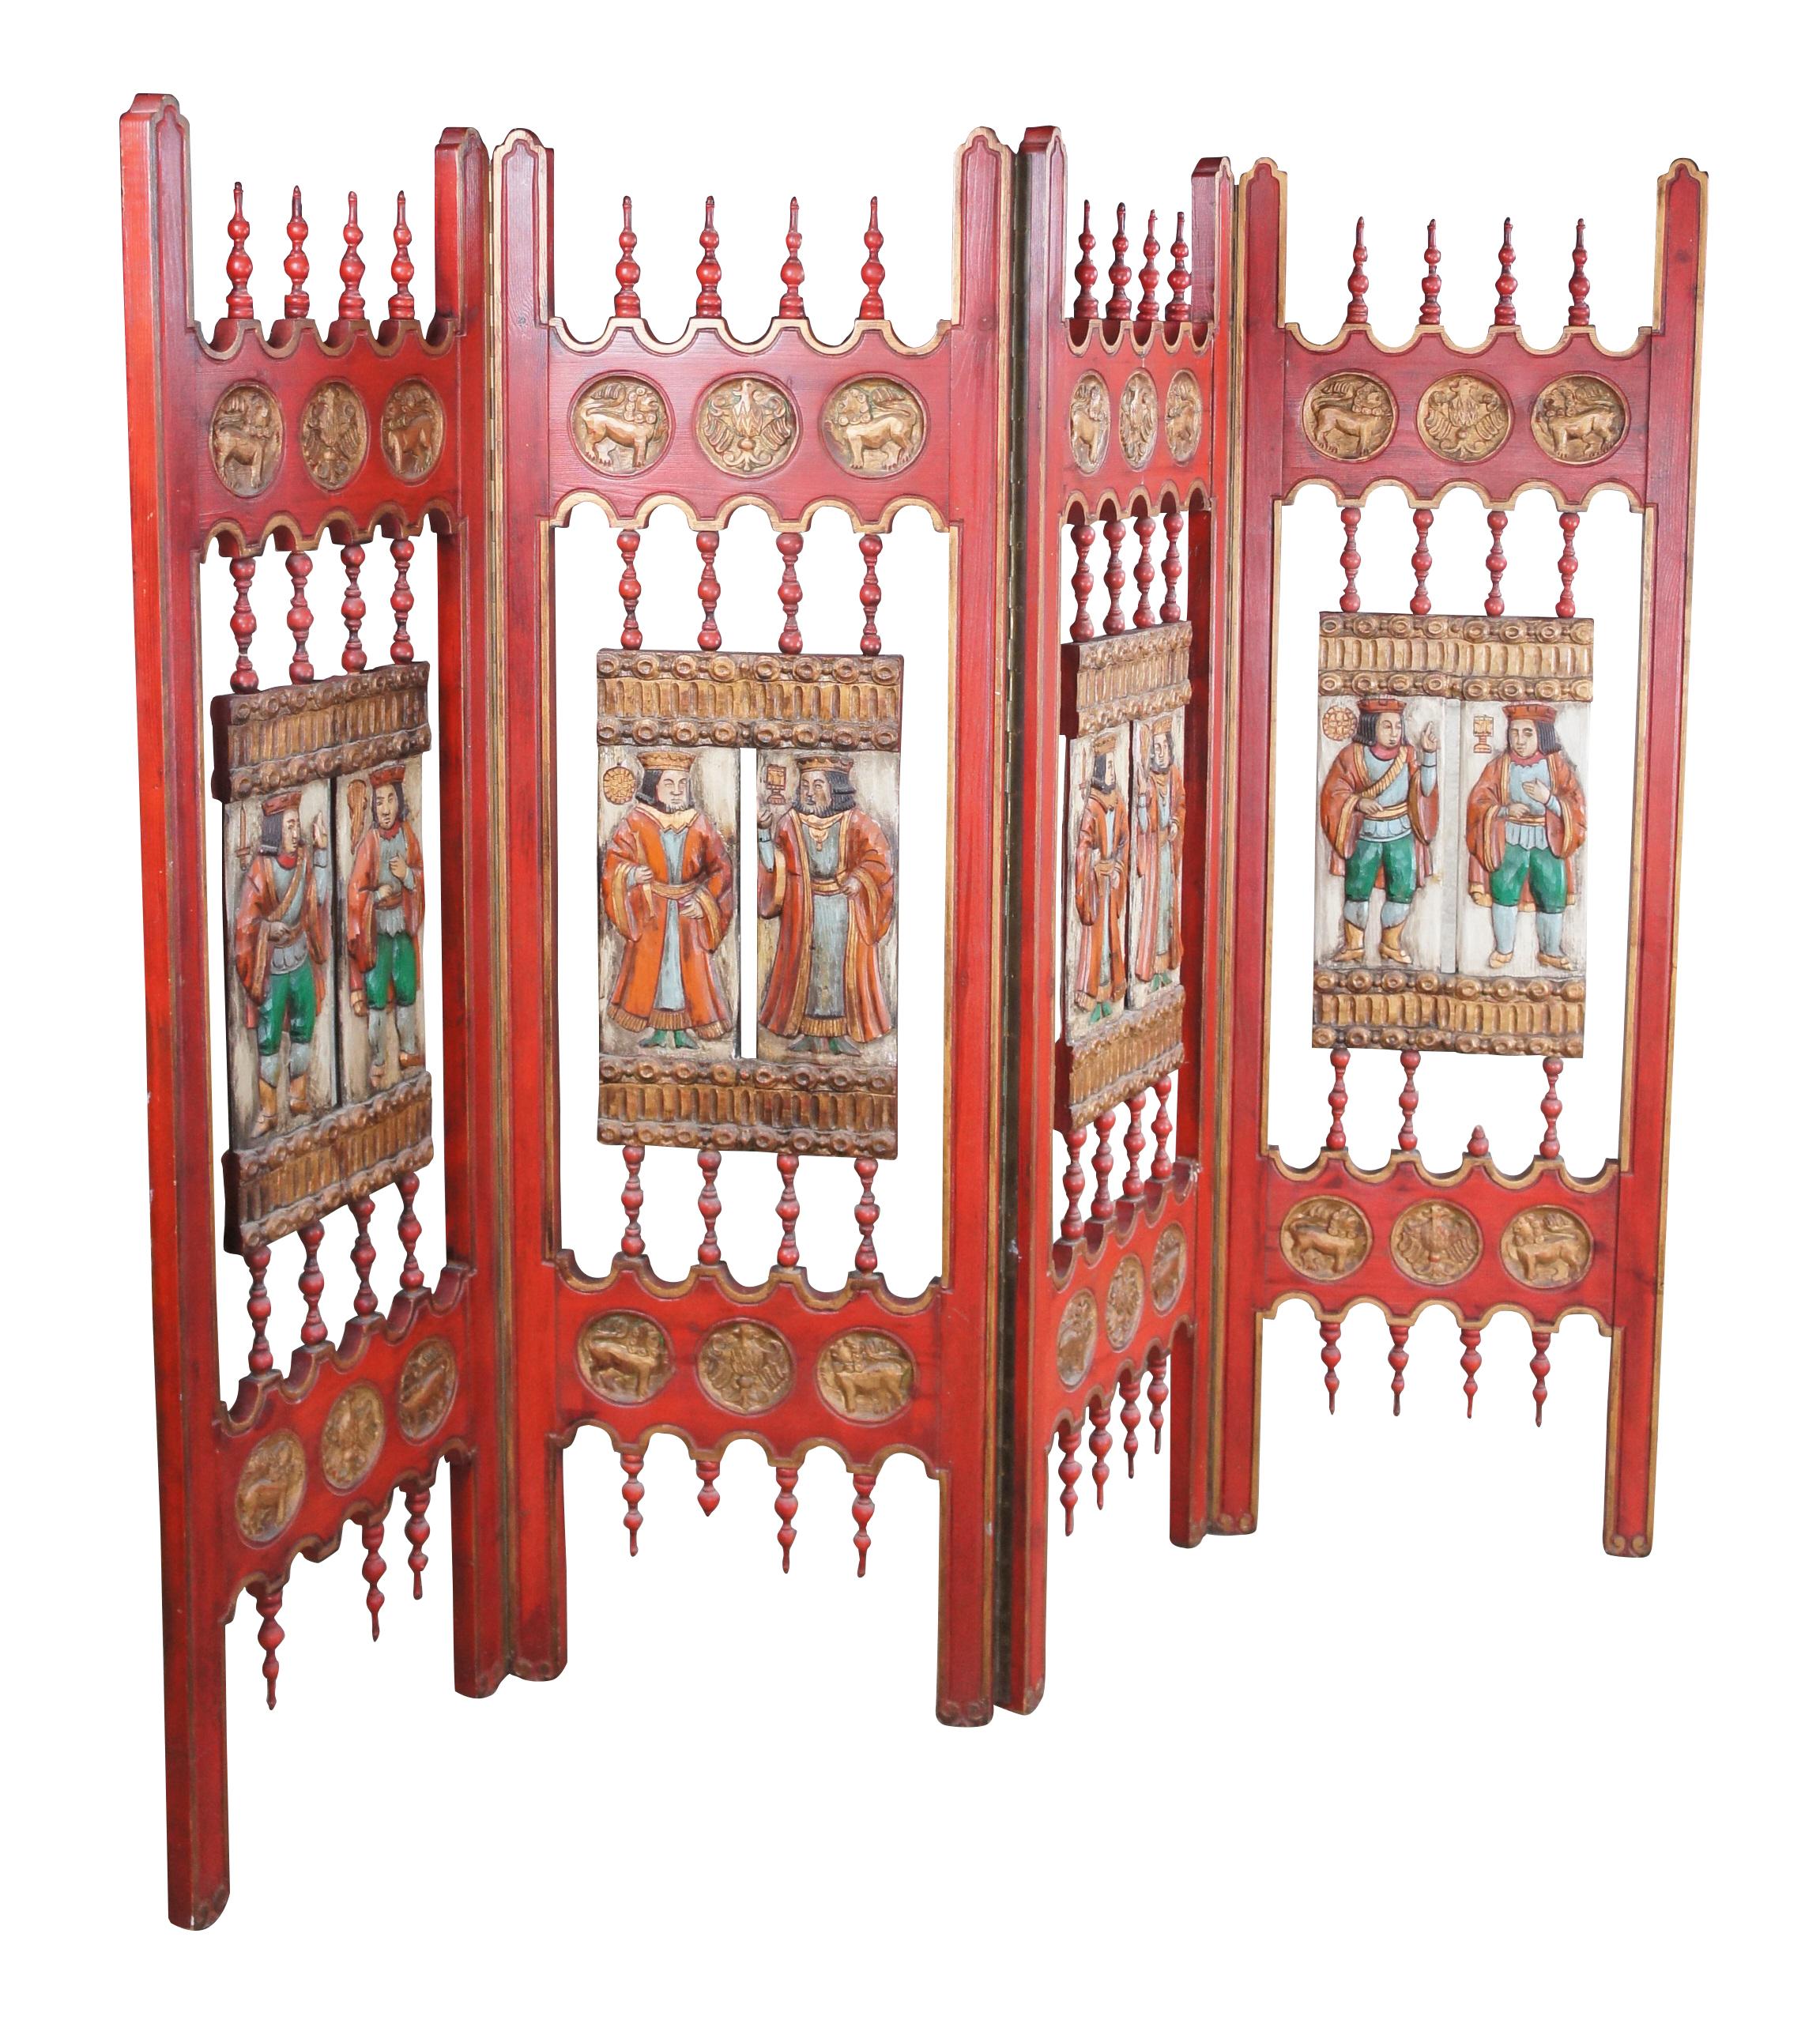 Vintage gothic / mittelalterliche vier Panel Raumteiler Bildschirm.  Aus rot lackierter Eiche mit netzartig gedrechseltem Spindeldesign und figurativen Königs- und Adelsplaketten in der Mitte, flankiert von goldenen Adler- und